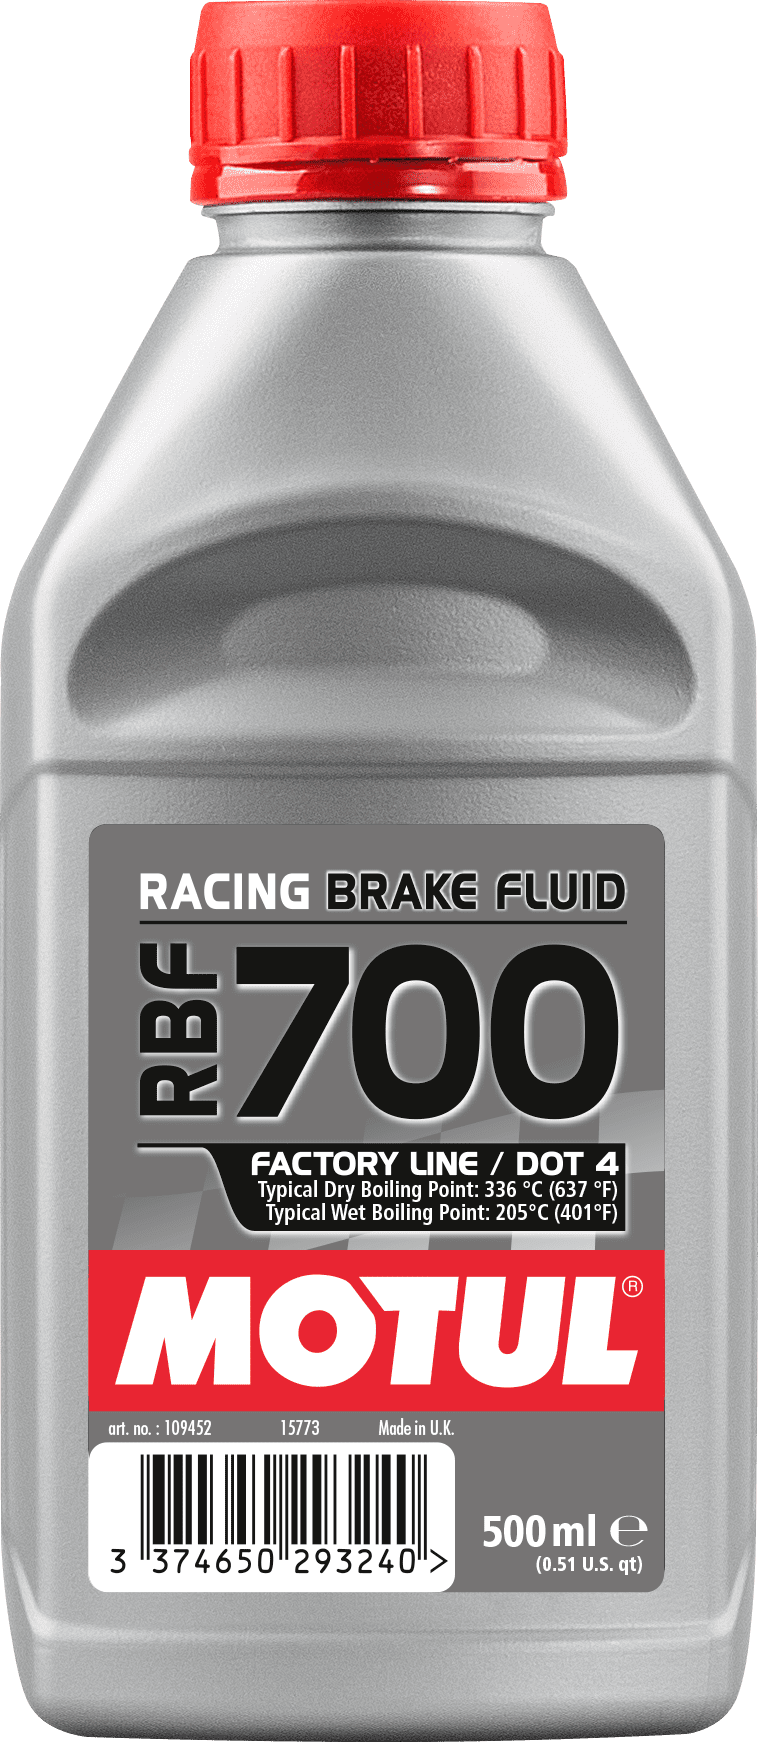 109452-500ML MOTUL RBF 700 FACTORY LINE a été spécialement formulé pour fournir les meilleures performances dans des conditions de course, où les systèmes de freinage doivent fonctionner à des températures très élevées.